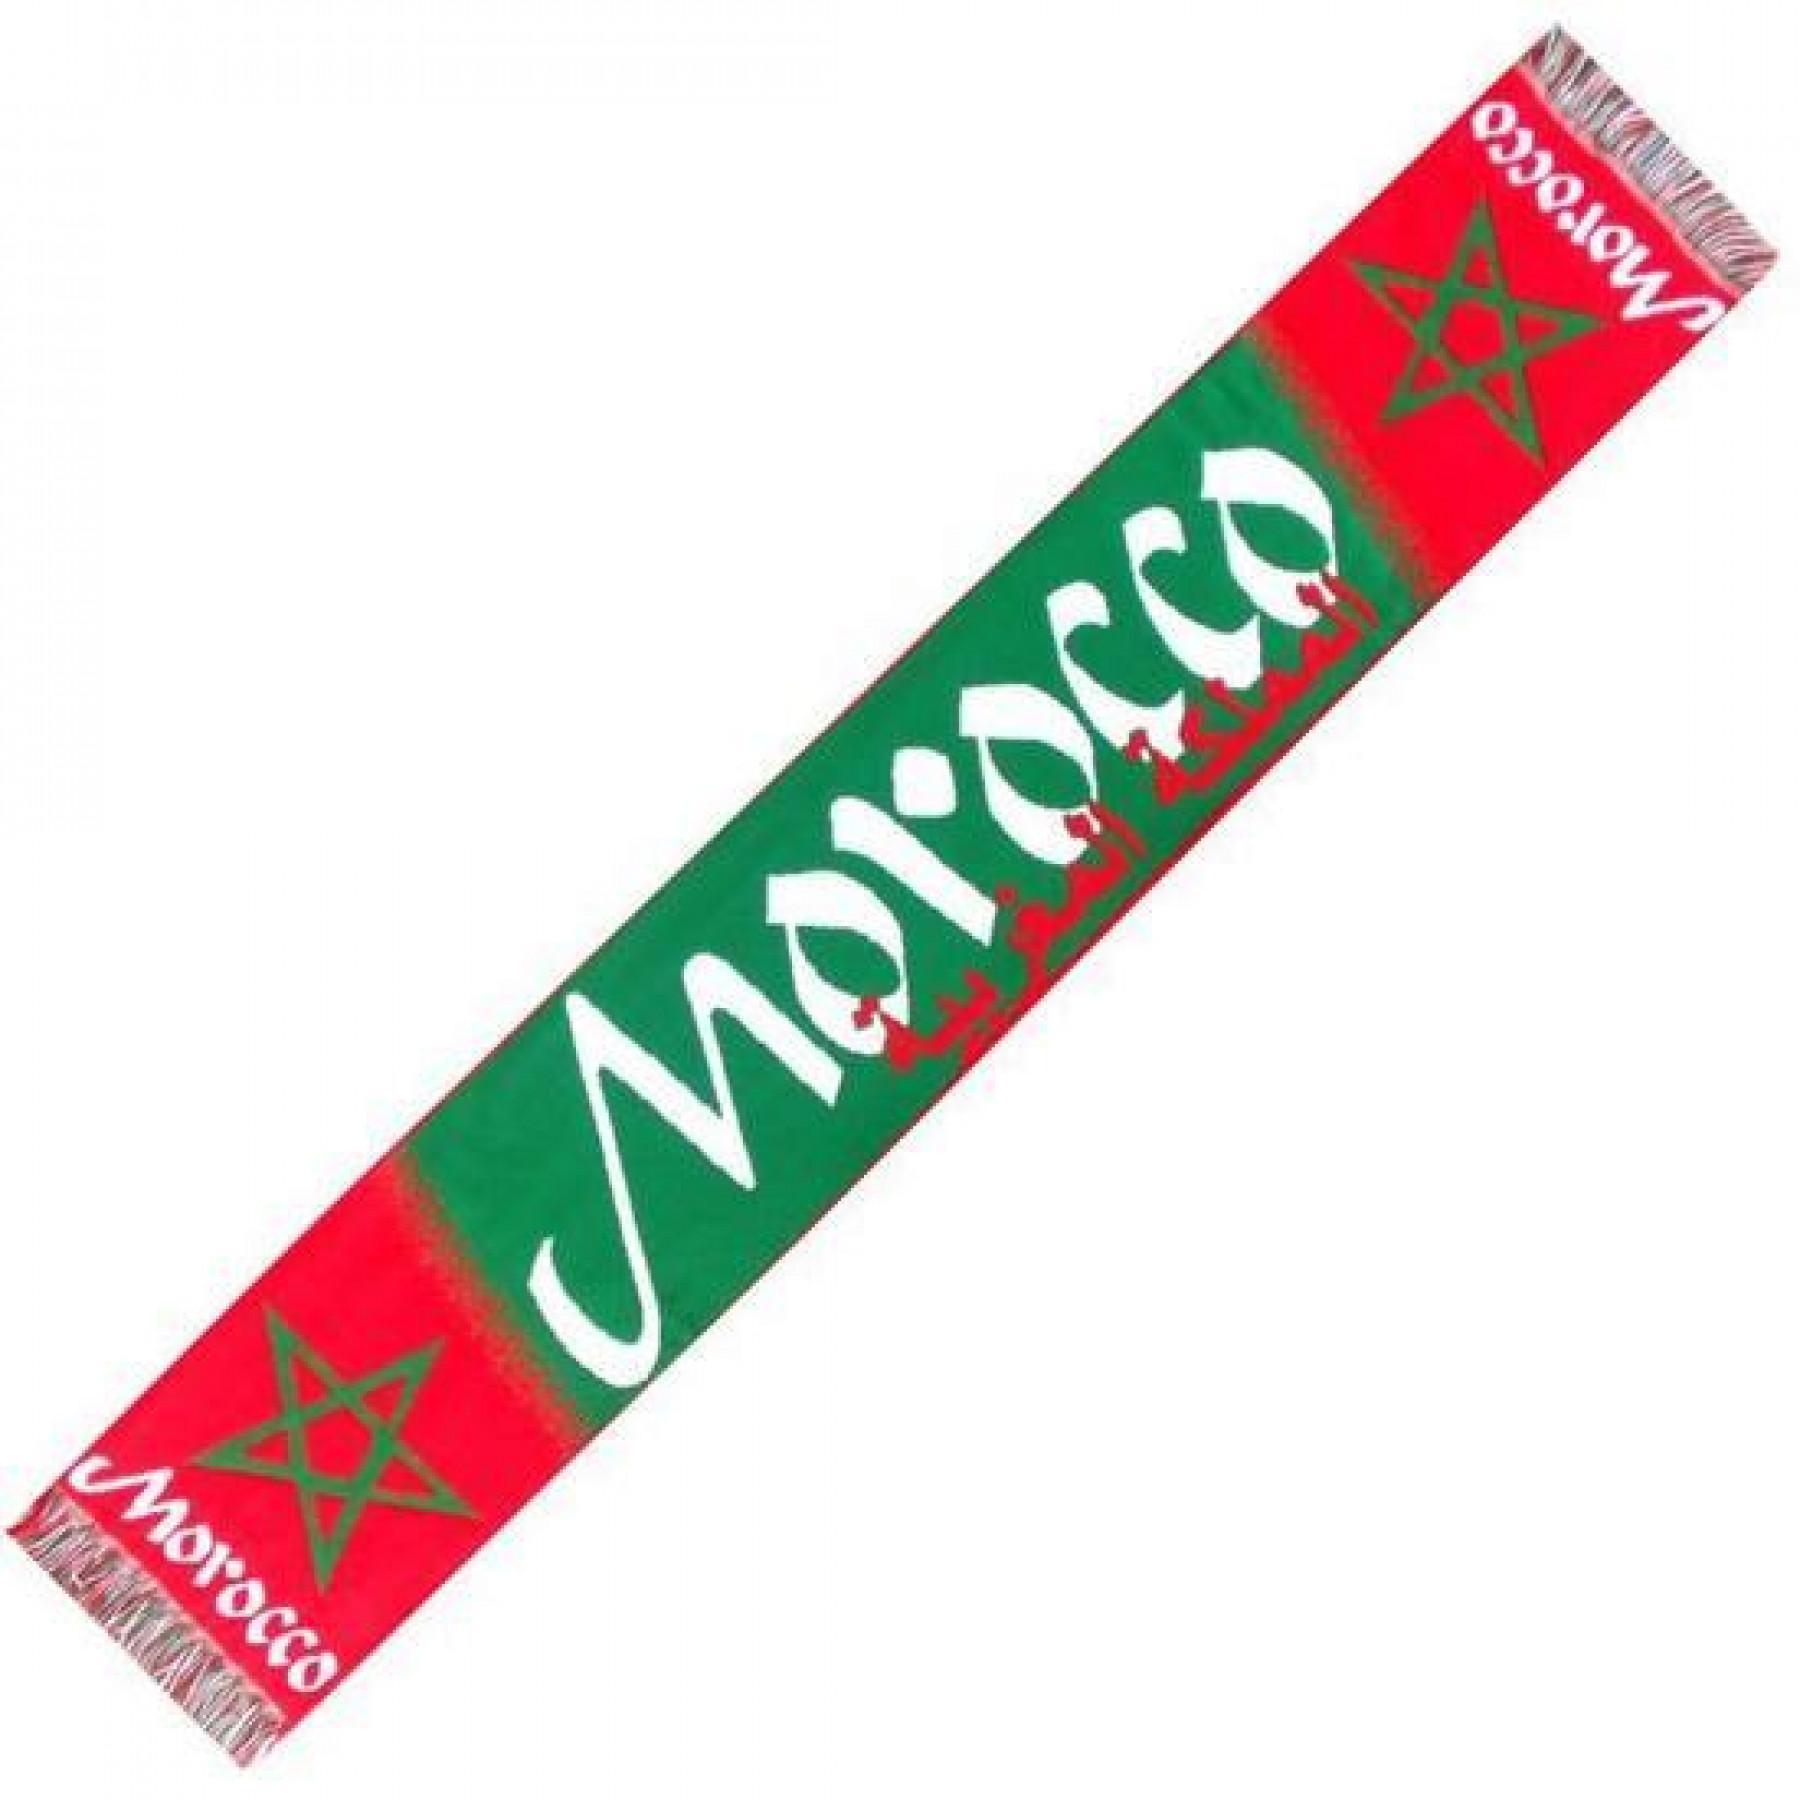 Halstuch Supporter Shop Maroc